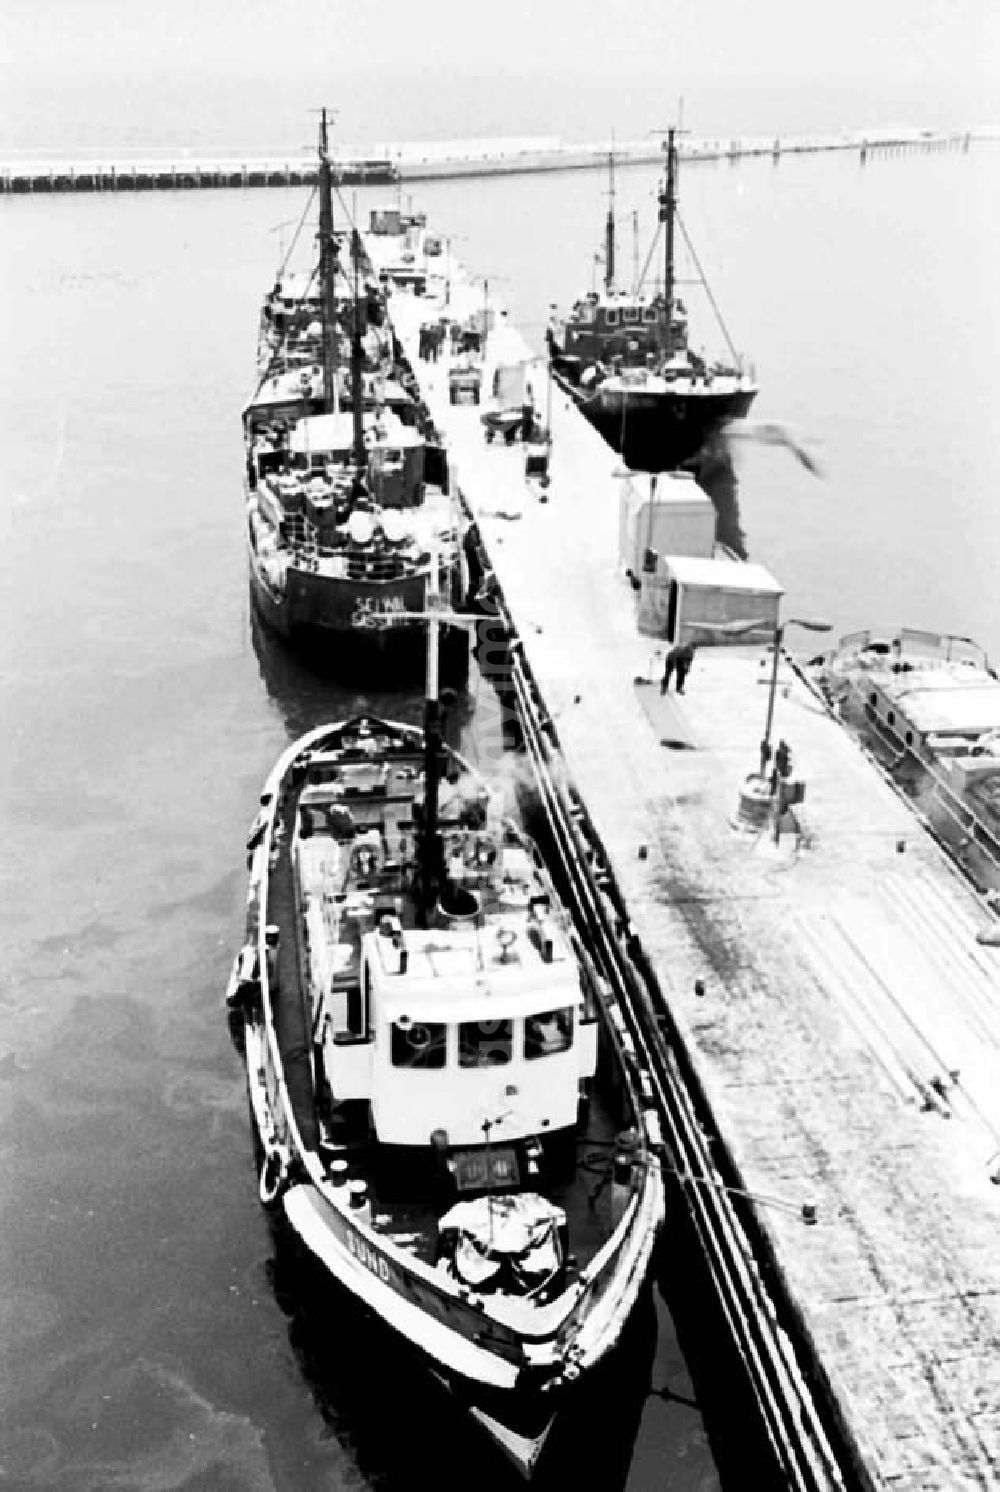 GDR photo archive: Saßnitz - Hafen vom Fischkombinat in Saßnitz auf Rügen